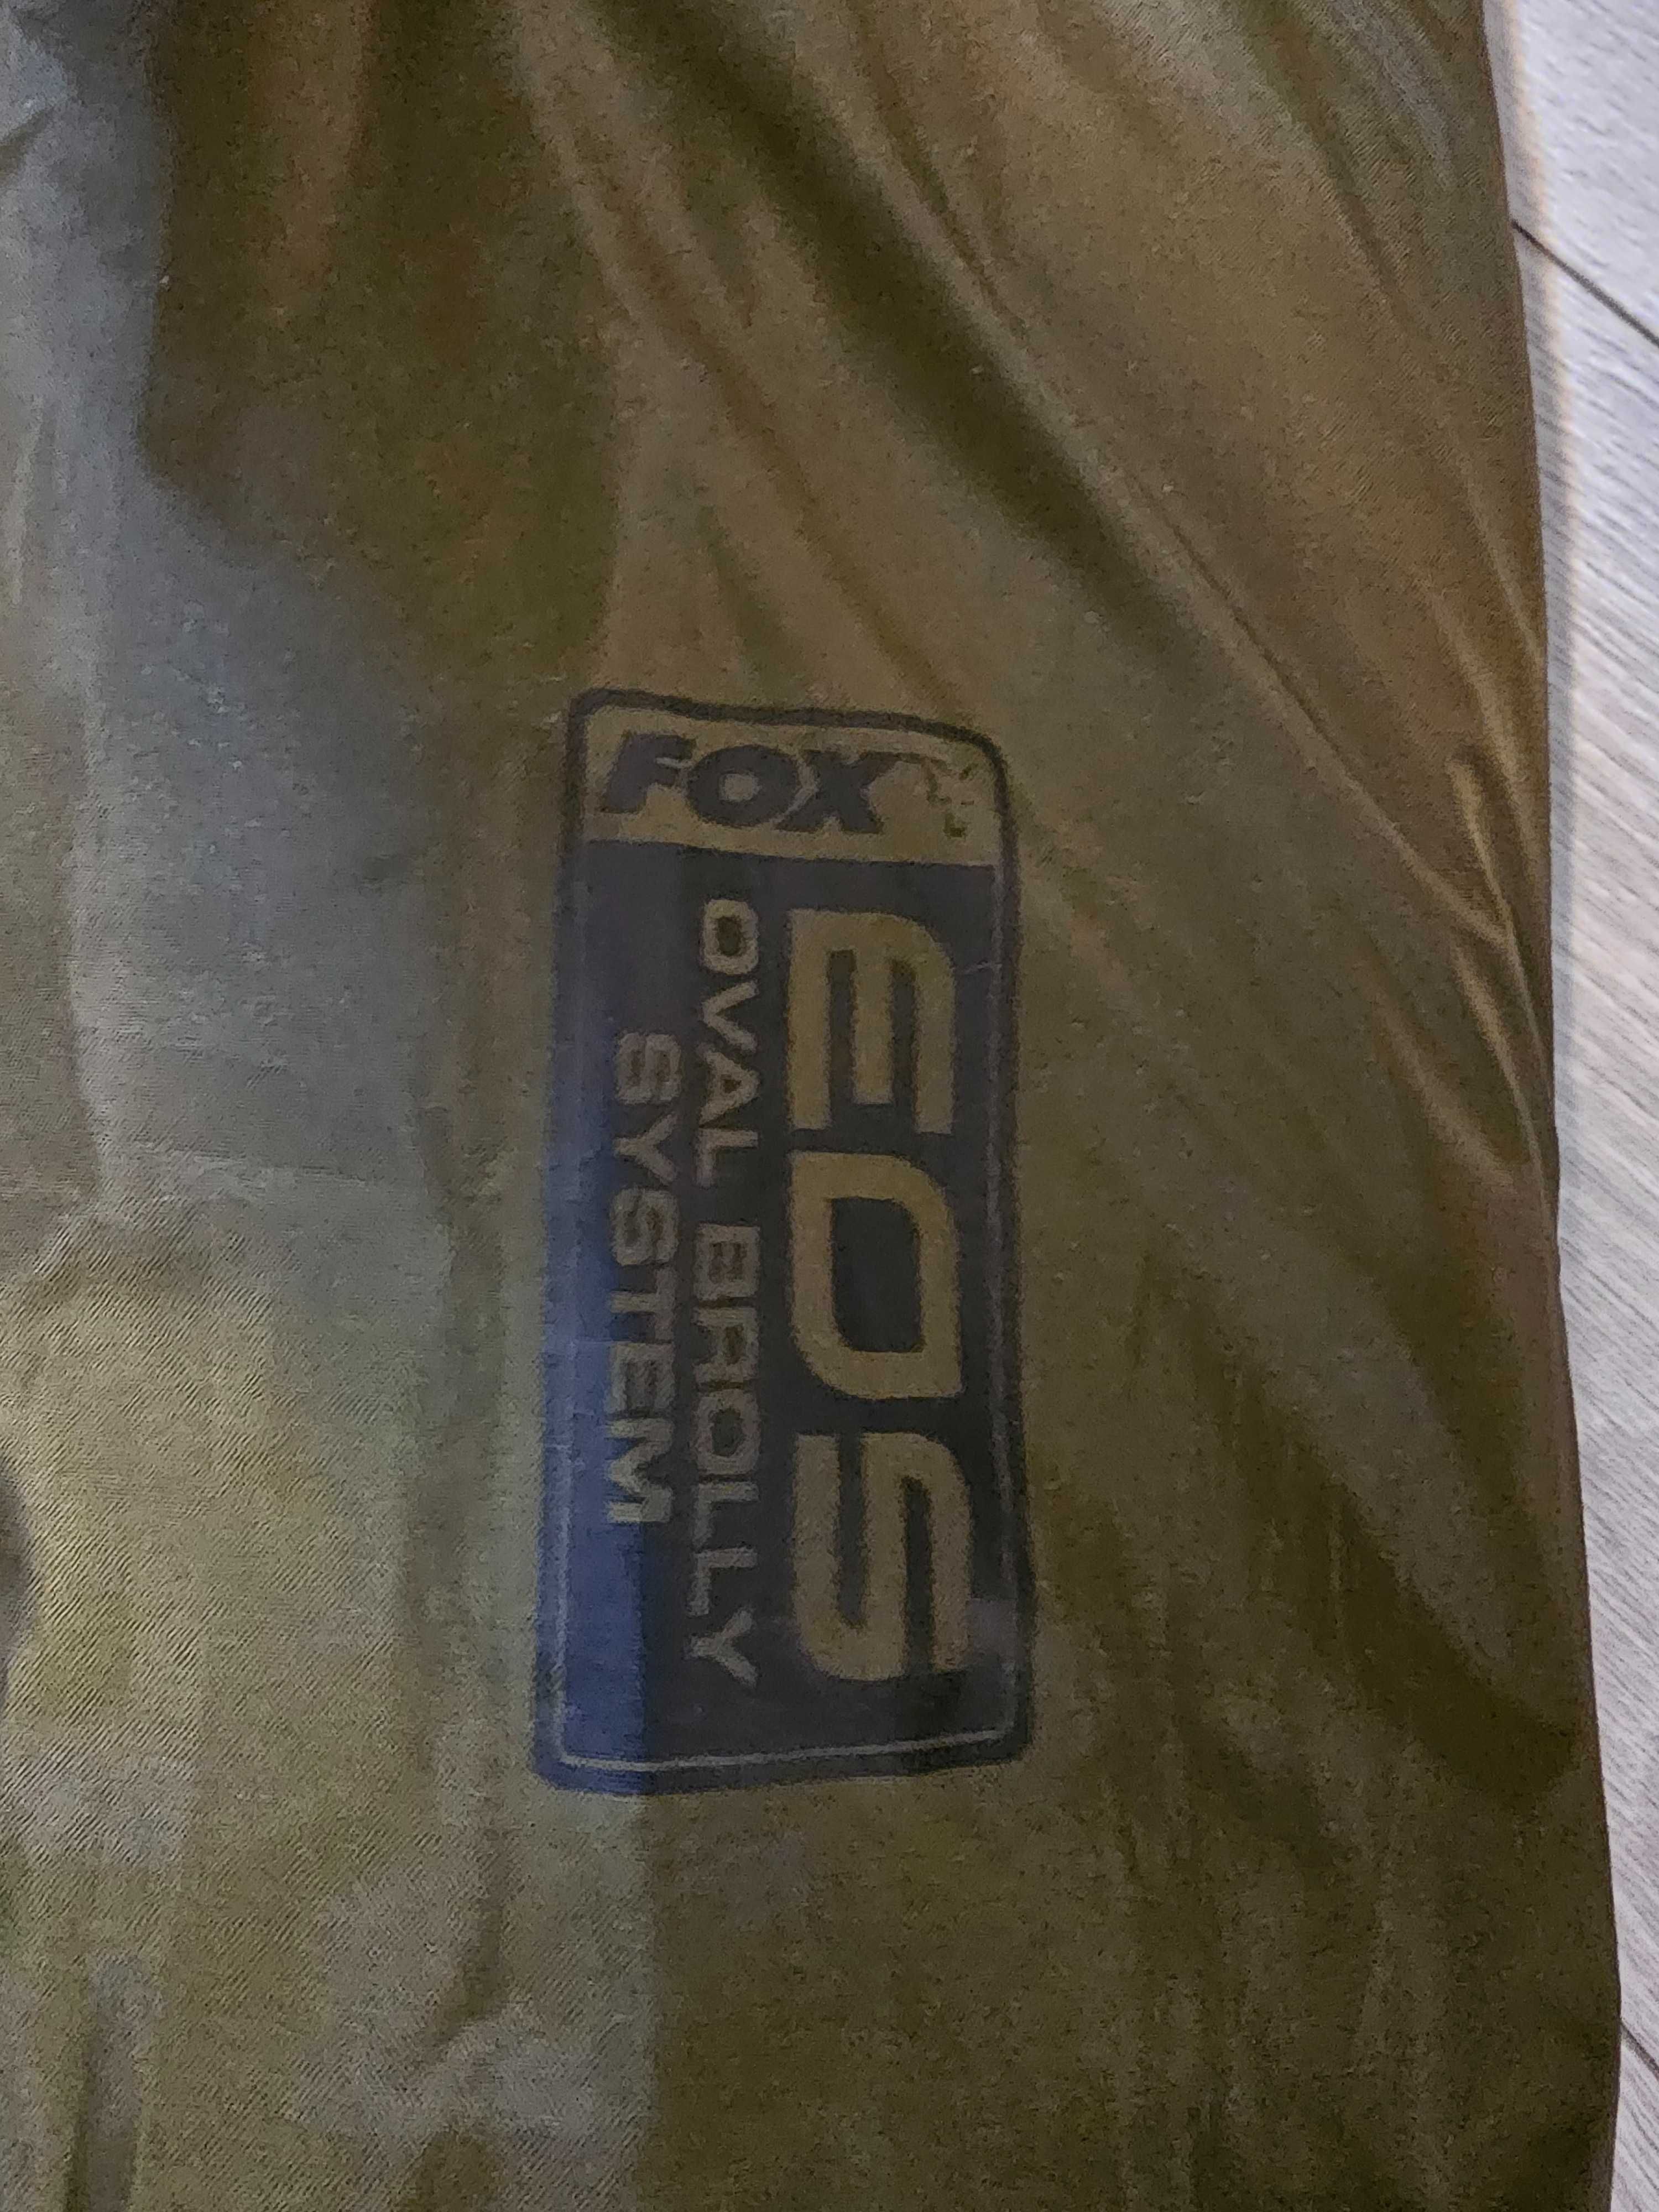 Cort FOX EOS 60 Inch Brolly System